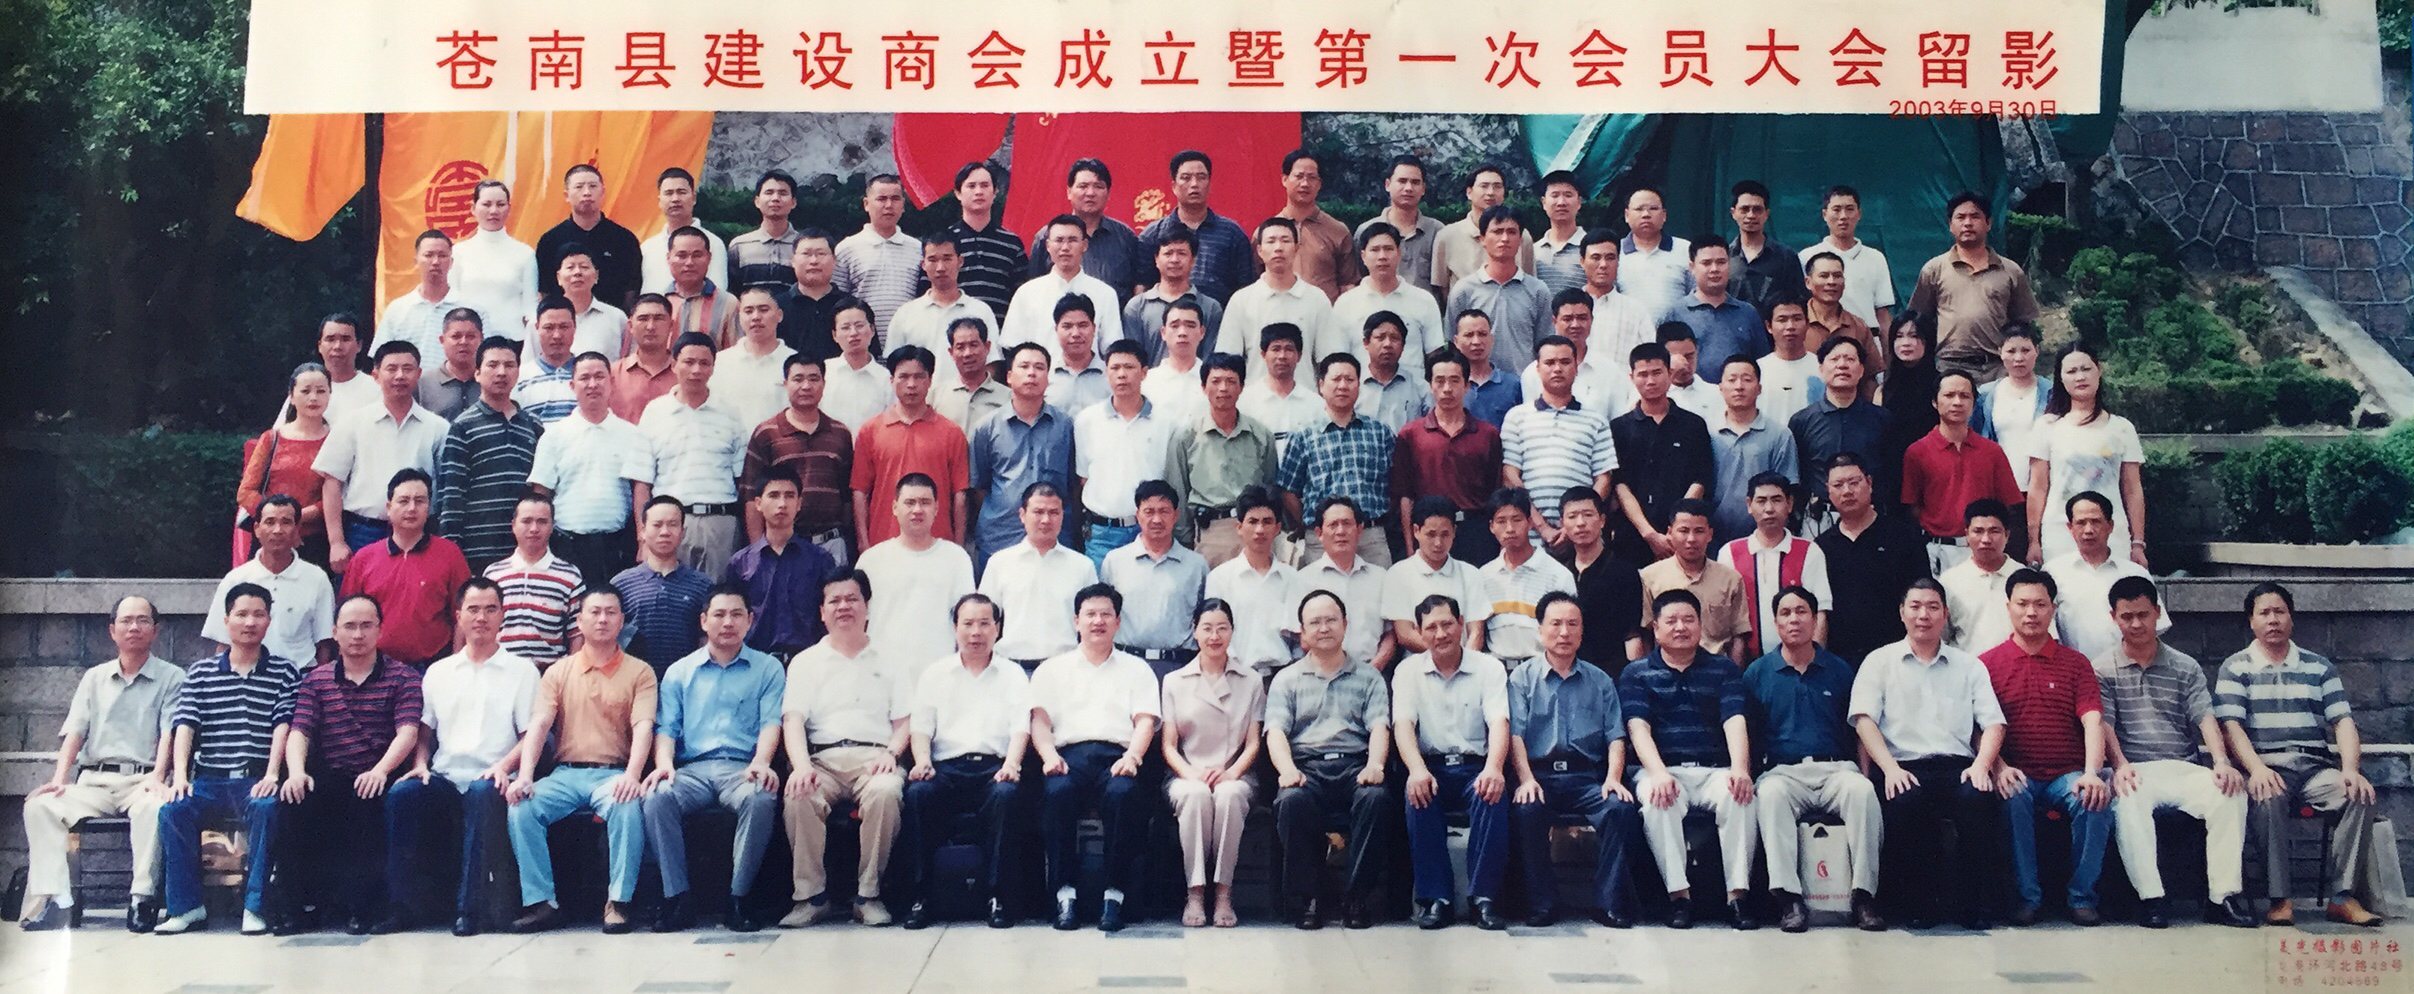 2003年9月30号苍南县建设商会成立暨第一次会员大会留影